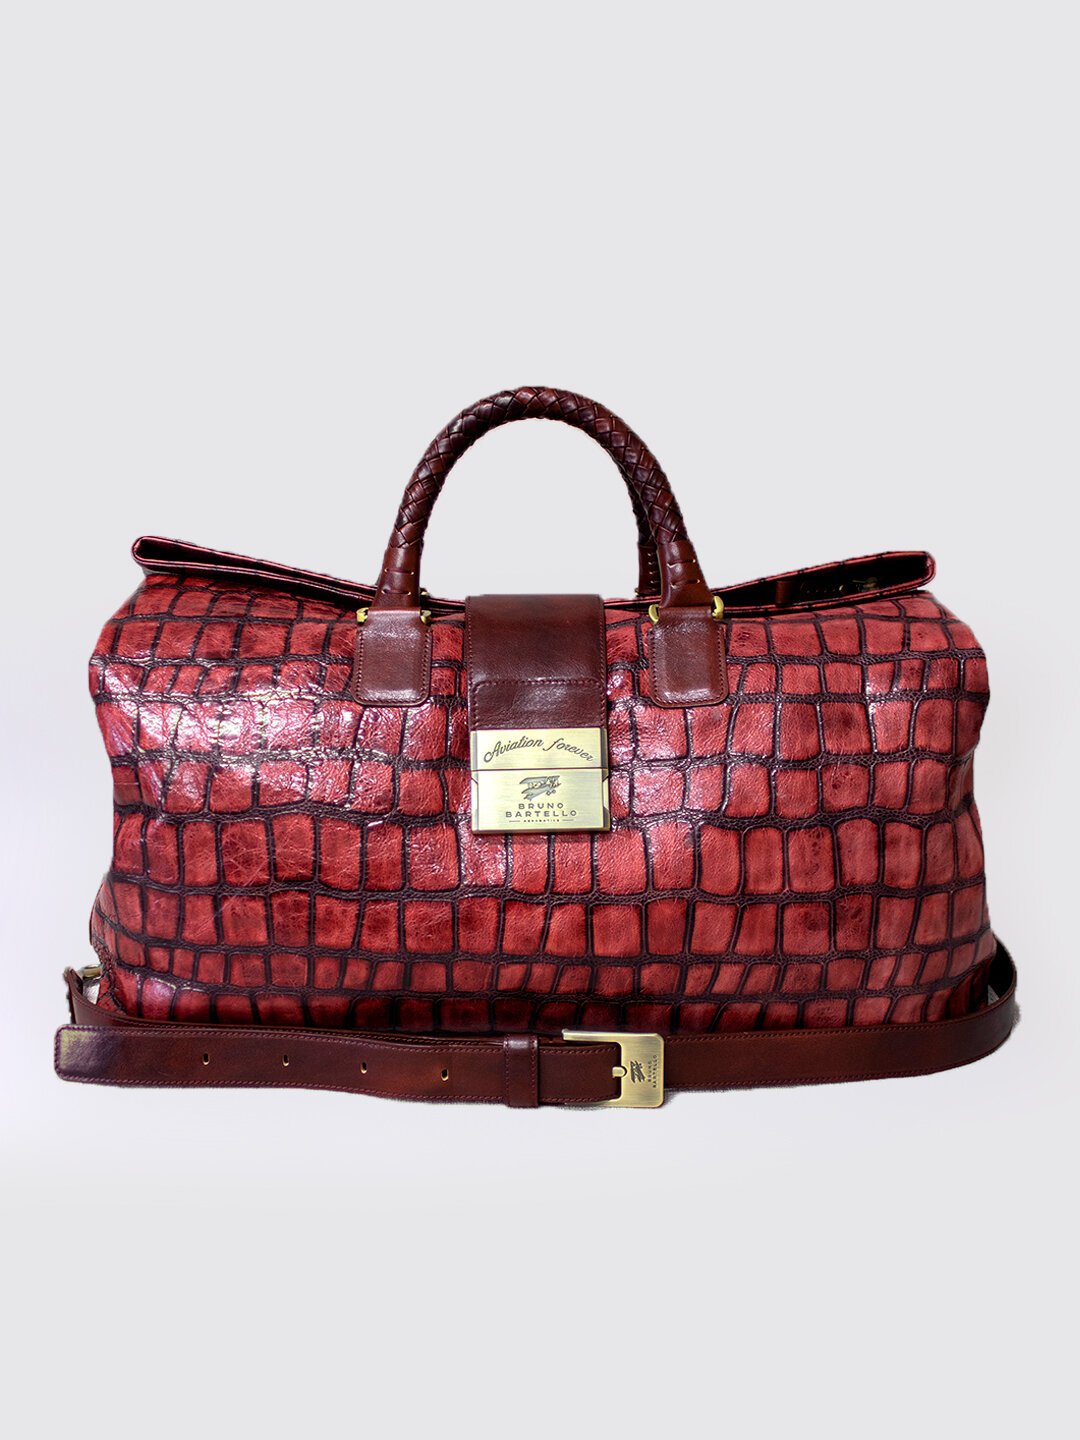 Дорожная сумка кожаная Bruno Bartello D-0003, клатч в комплекте. бордовая